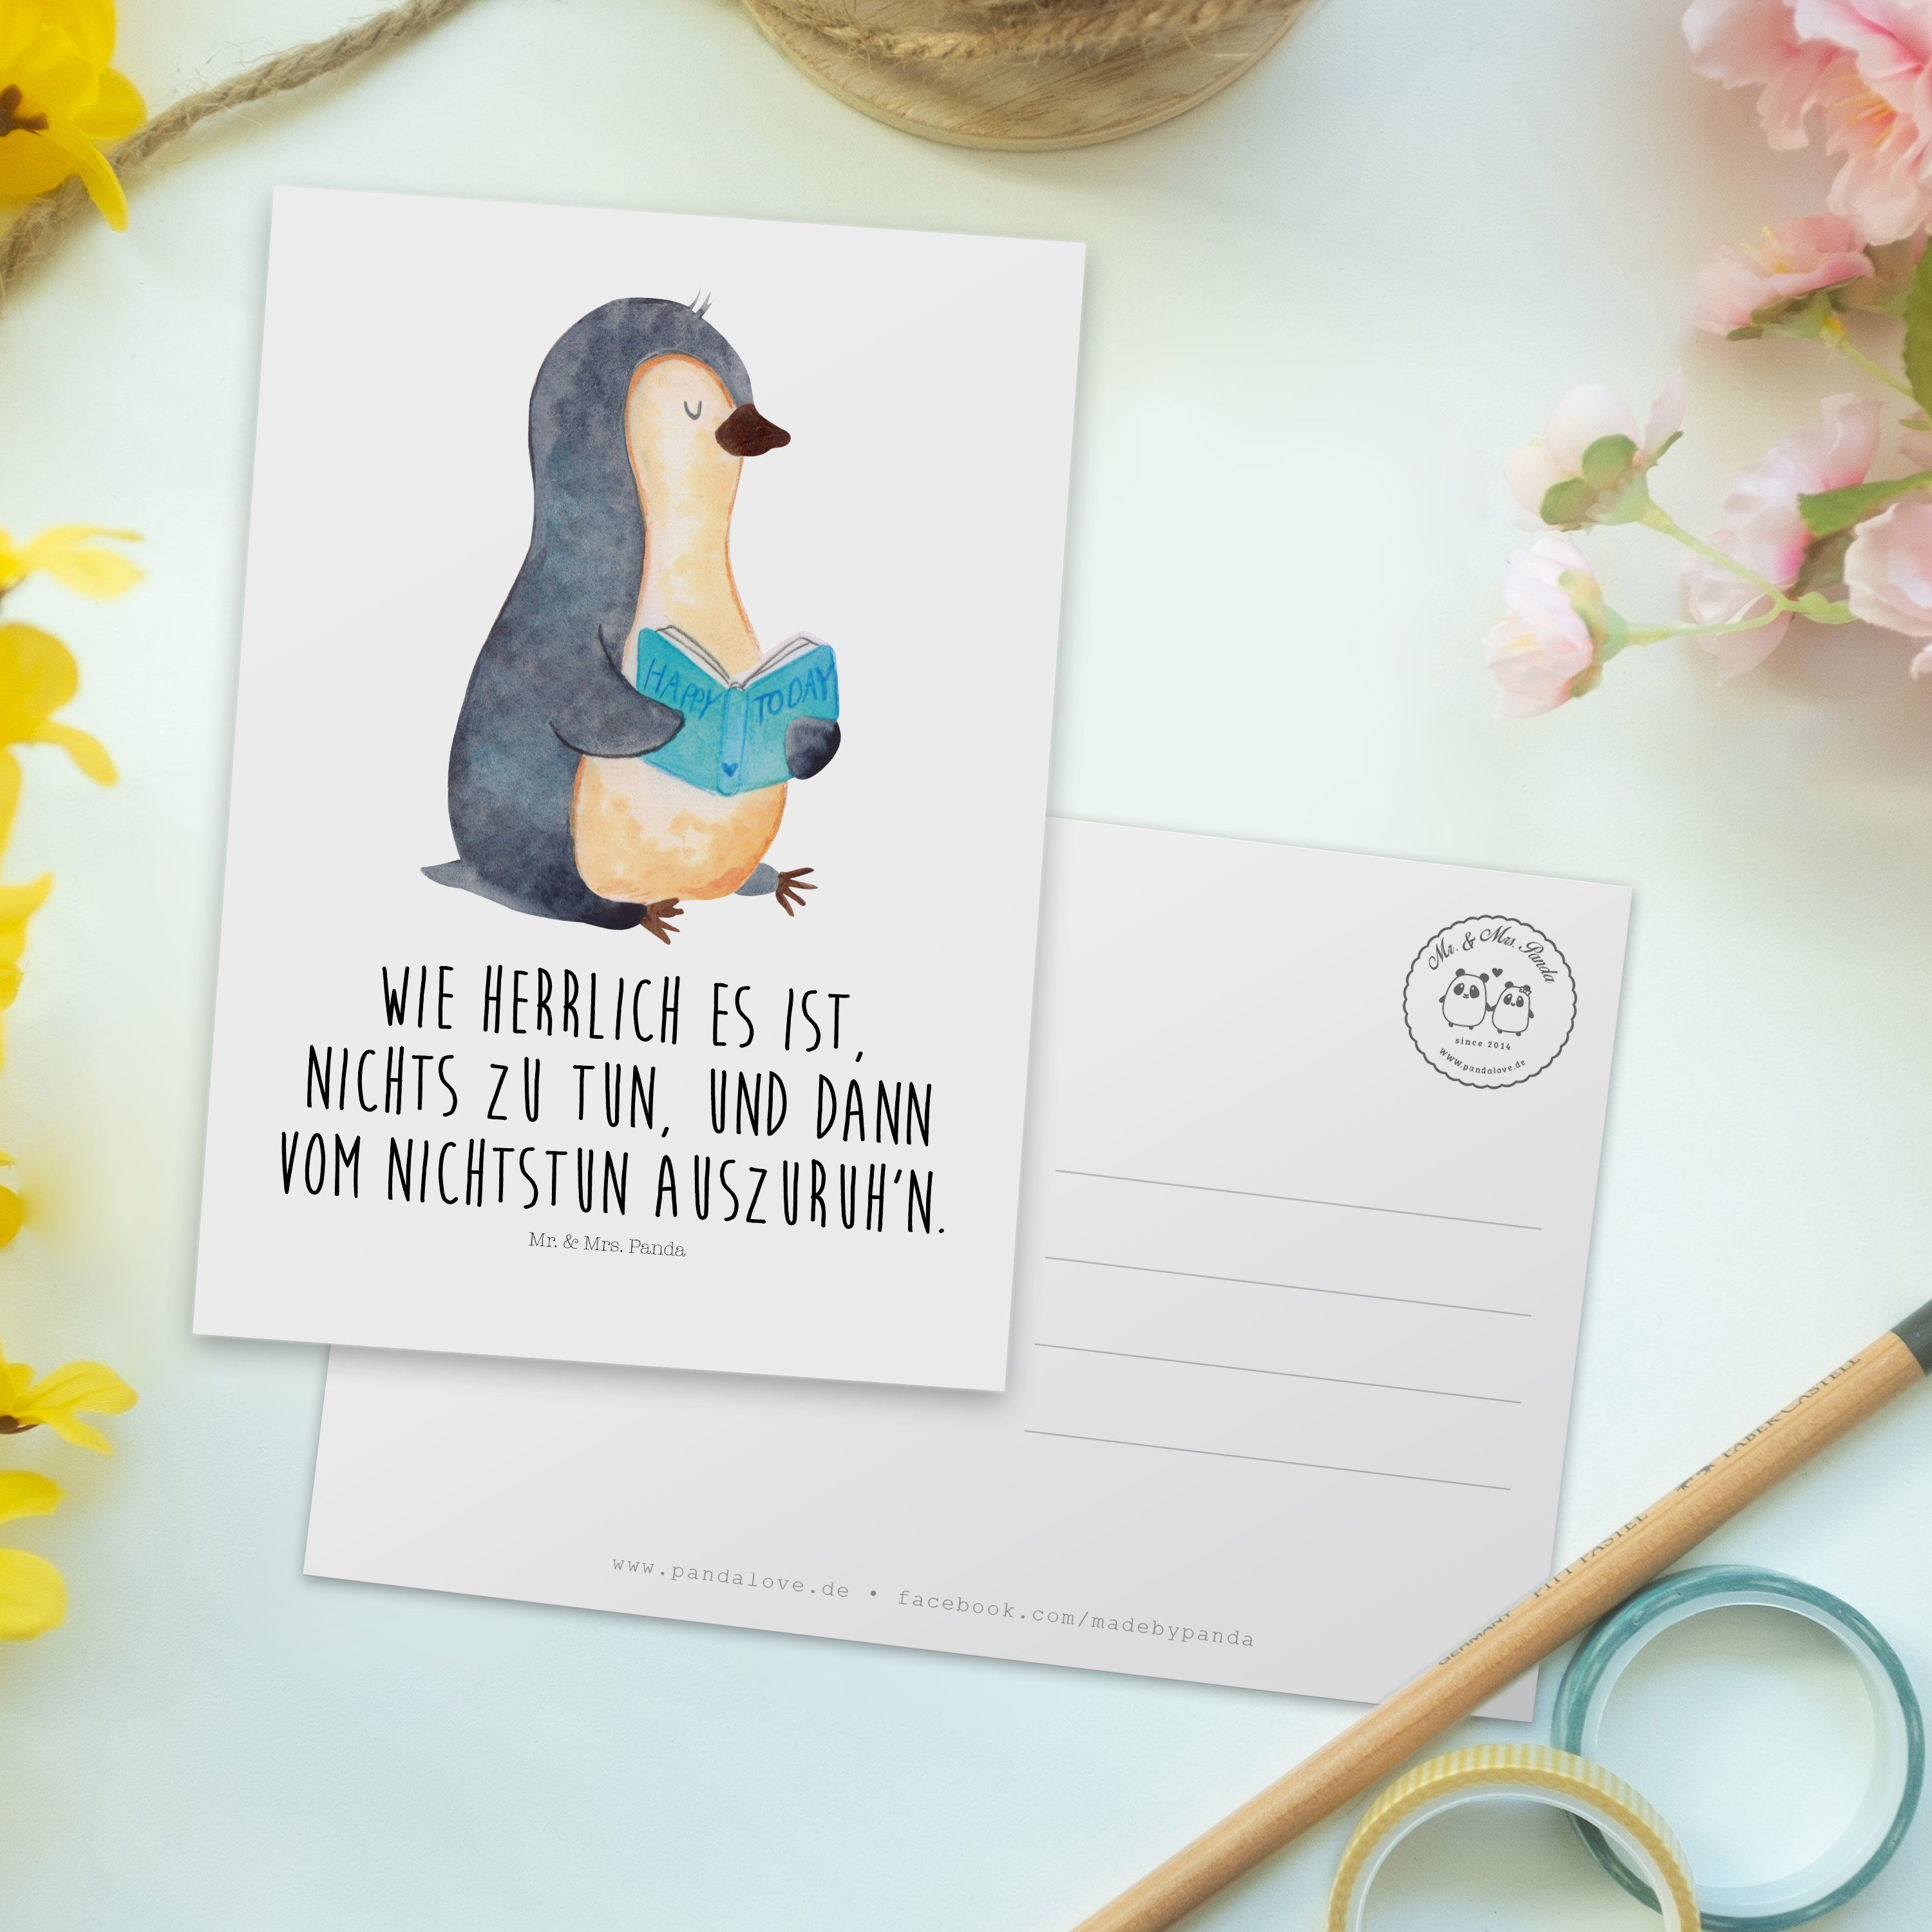 Mr. Geschenkkarte Geschenk, Pinguin & Panda - Mrs. Einladung, Weiß Buch Bücherwurm, - Postkarte